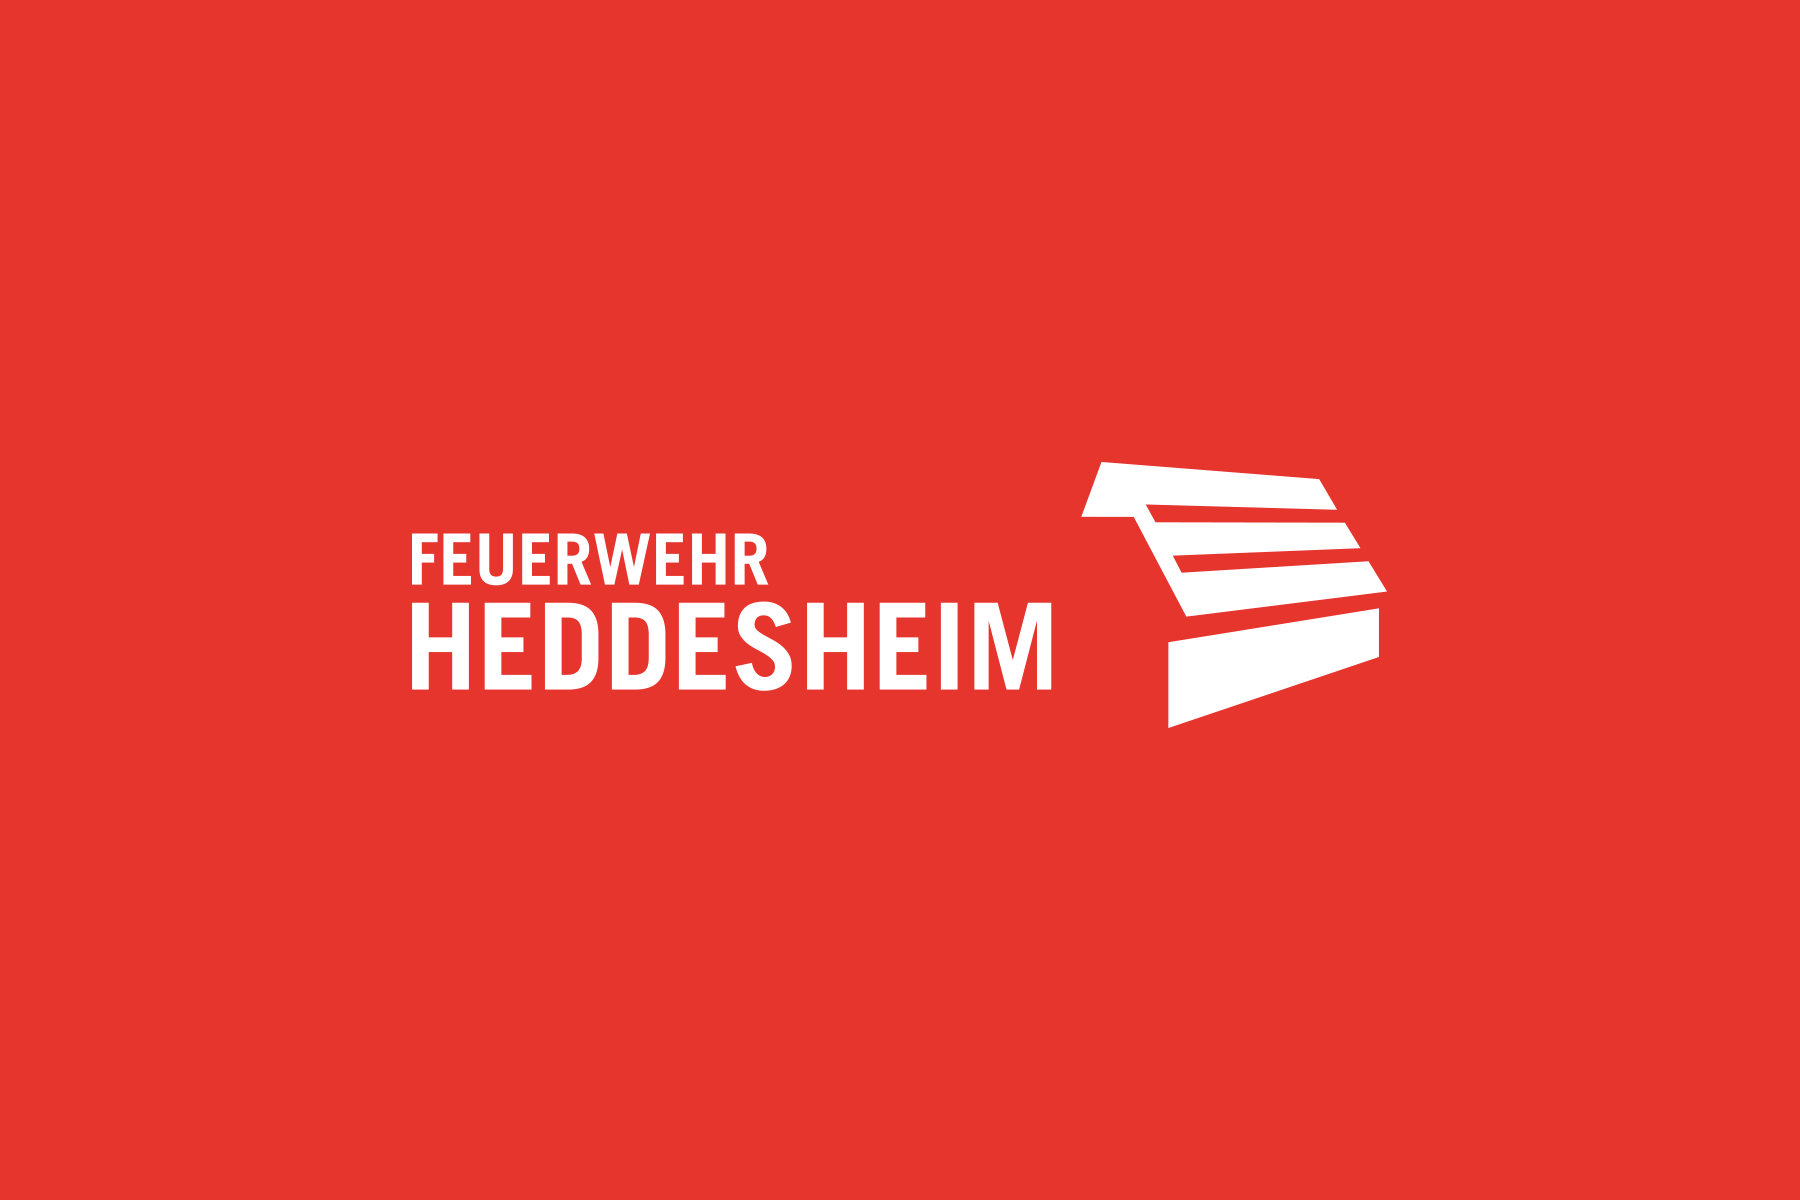 (c) Feuerwehr-heddesheim.de